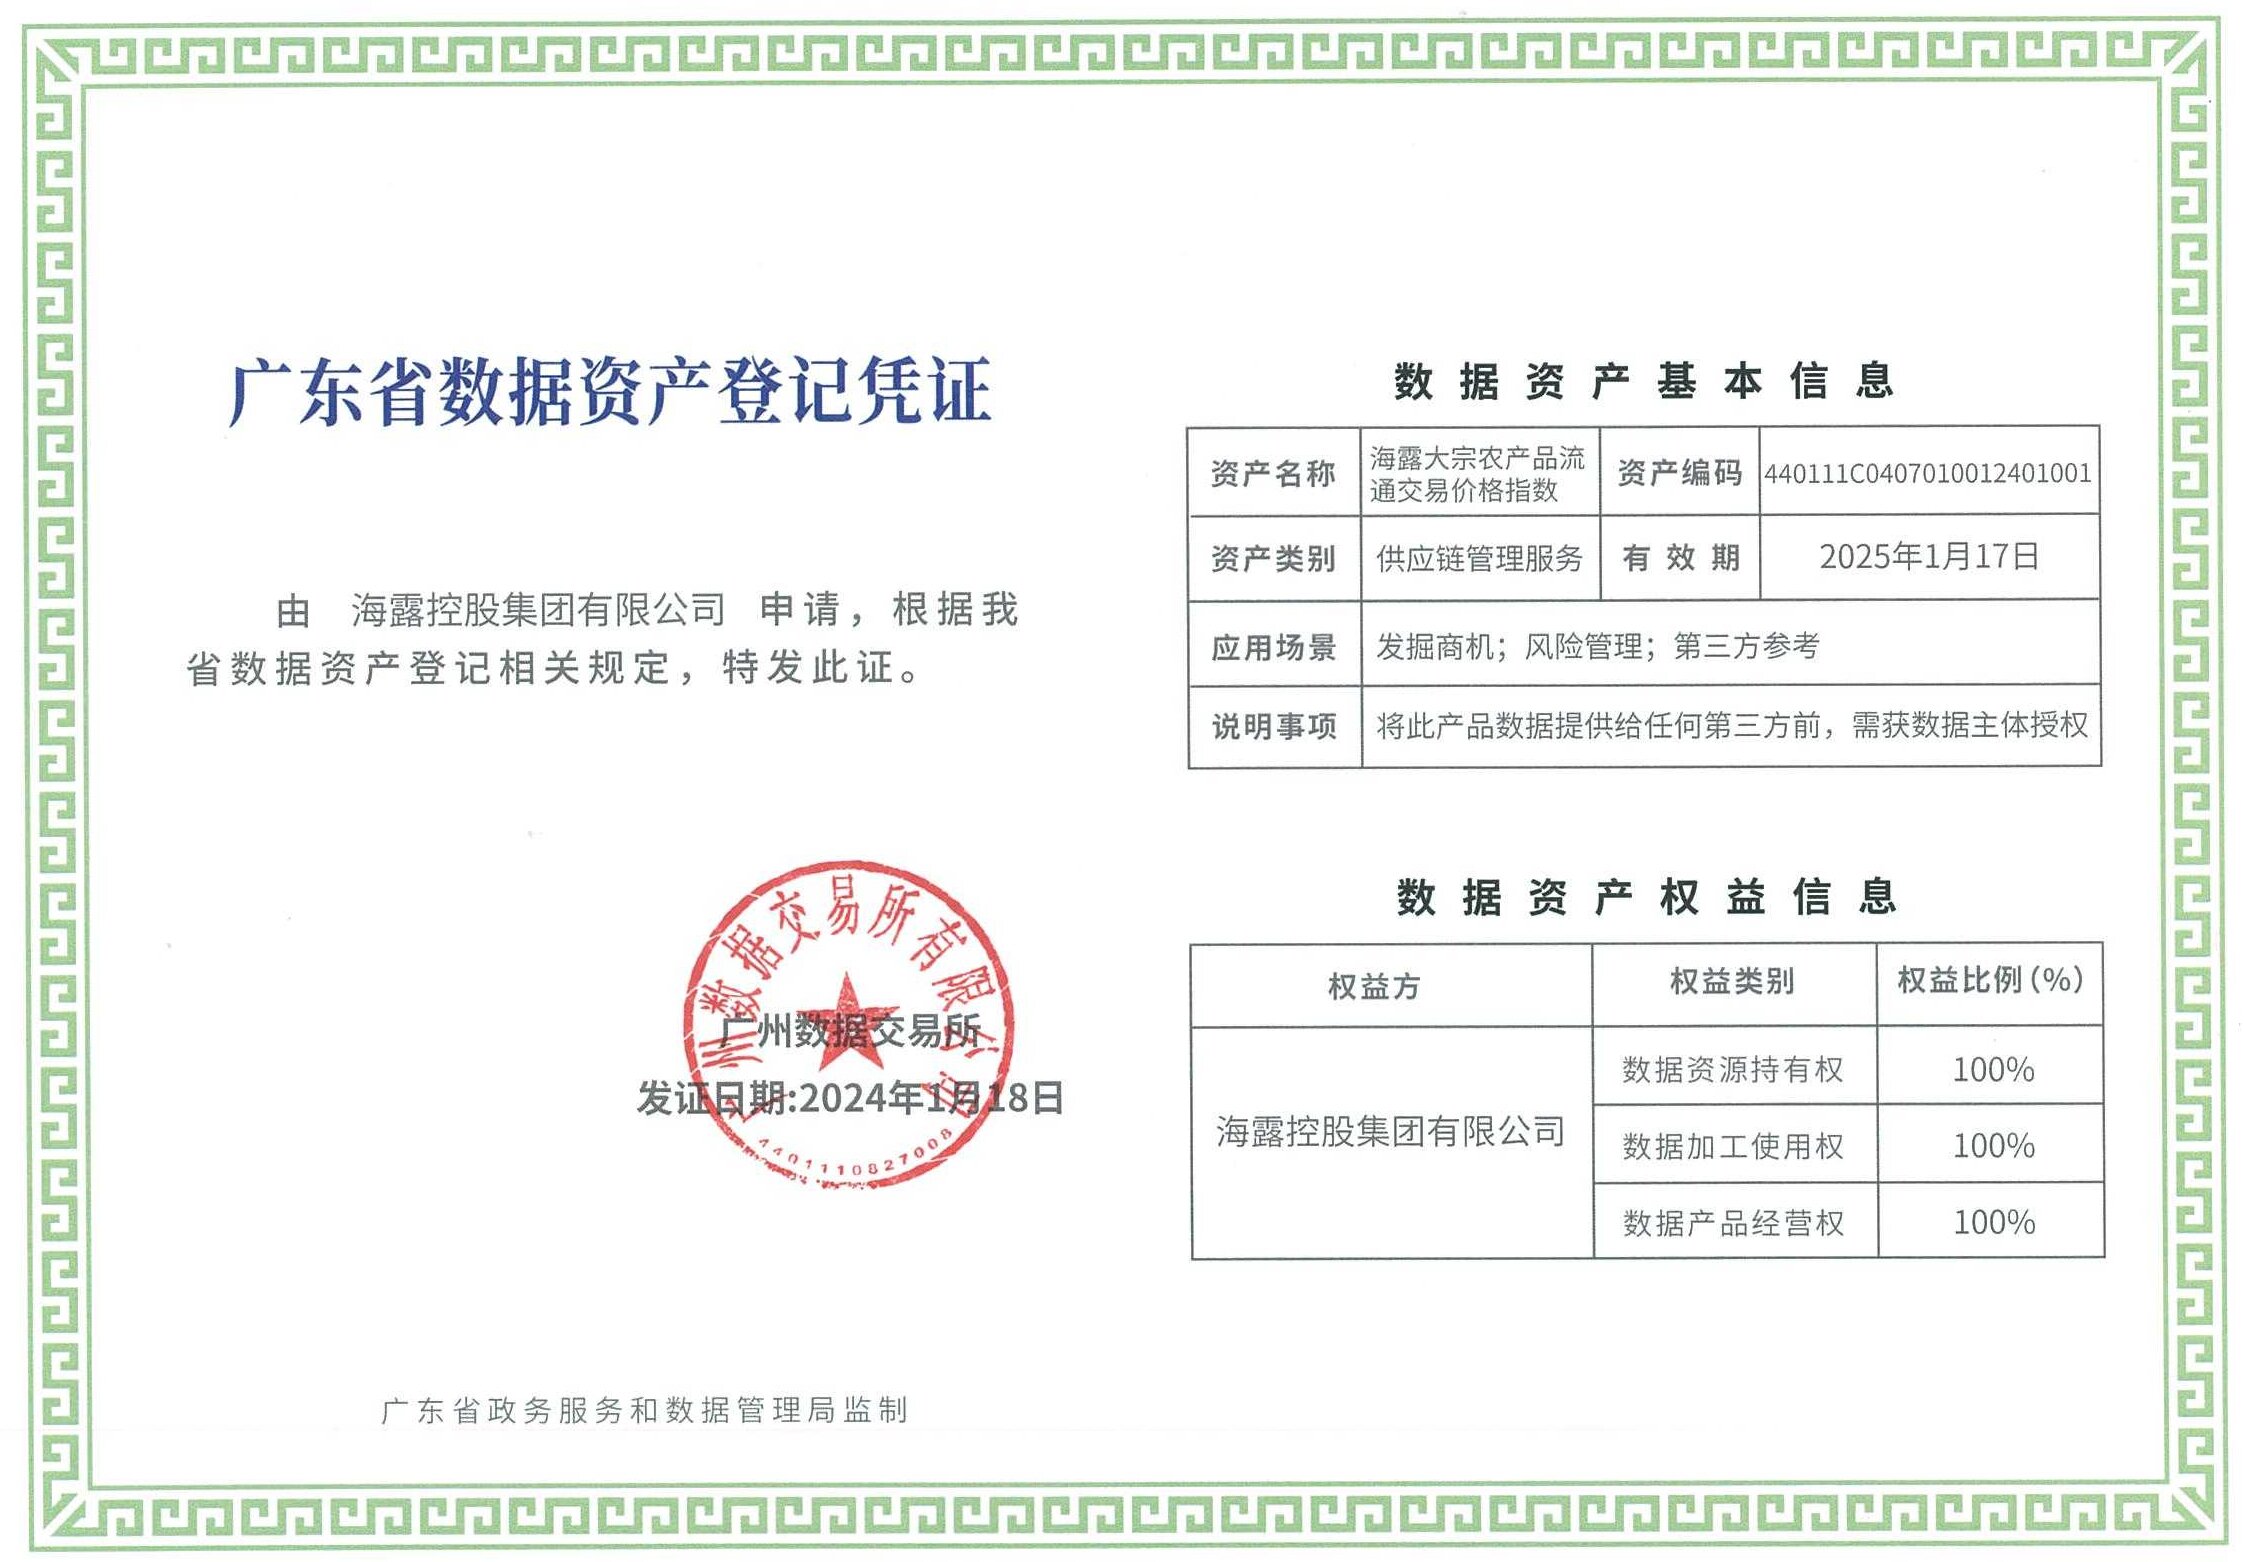 海露集团农产品交易系统获“广东省数据资产登记凭证”_proc.jpg